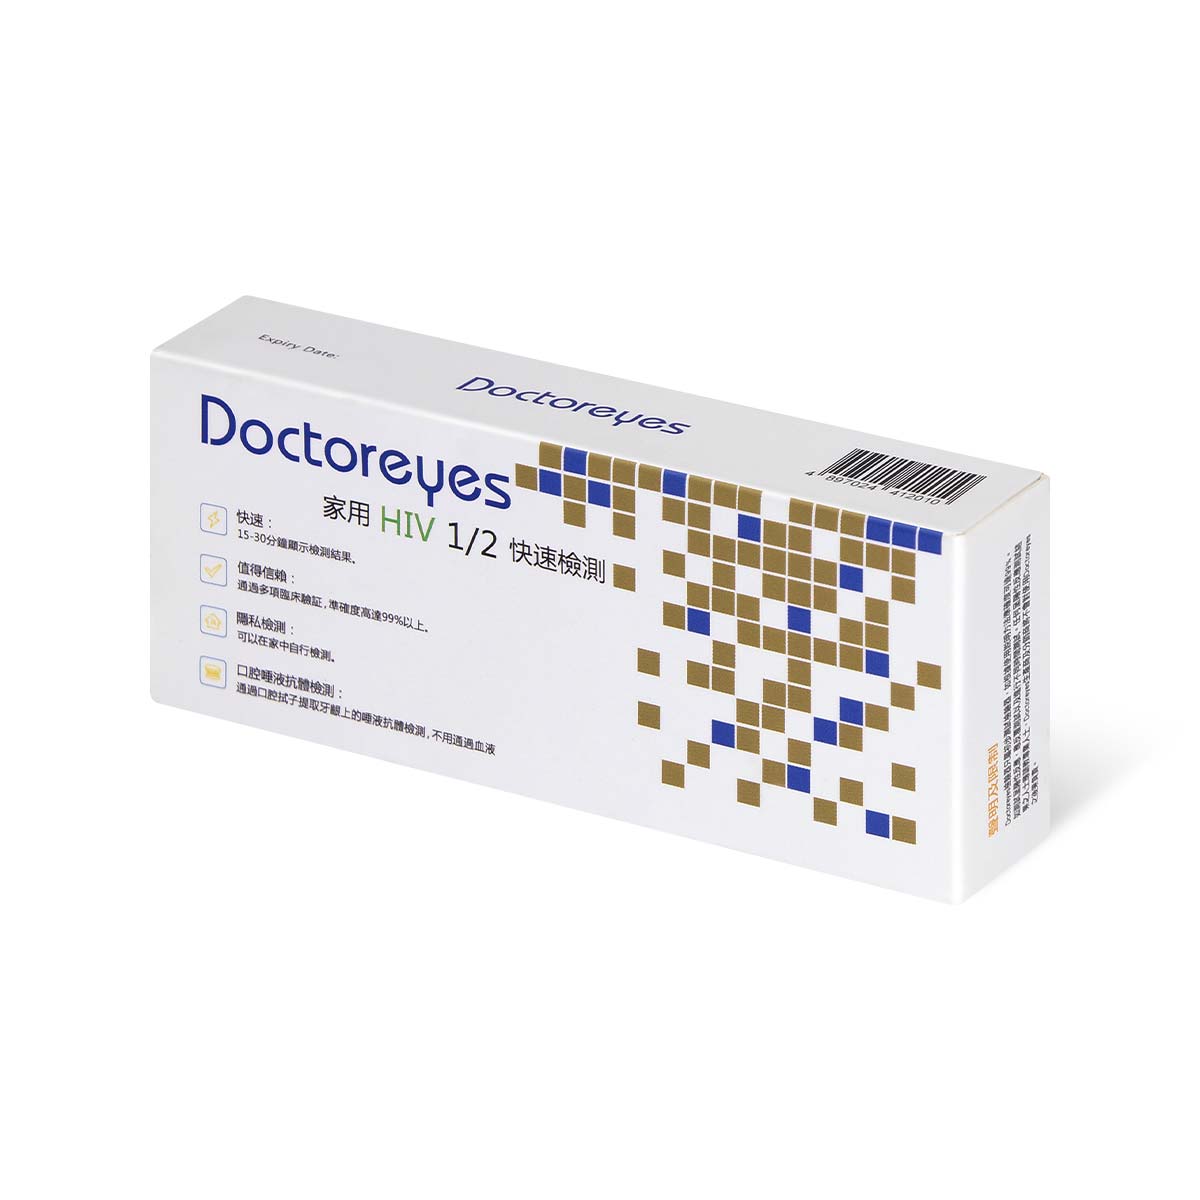 Doctoreyes Oral HIV Test Kit-p_1